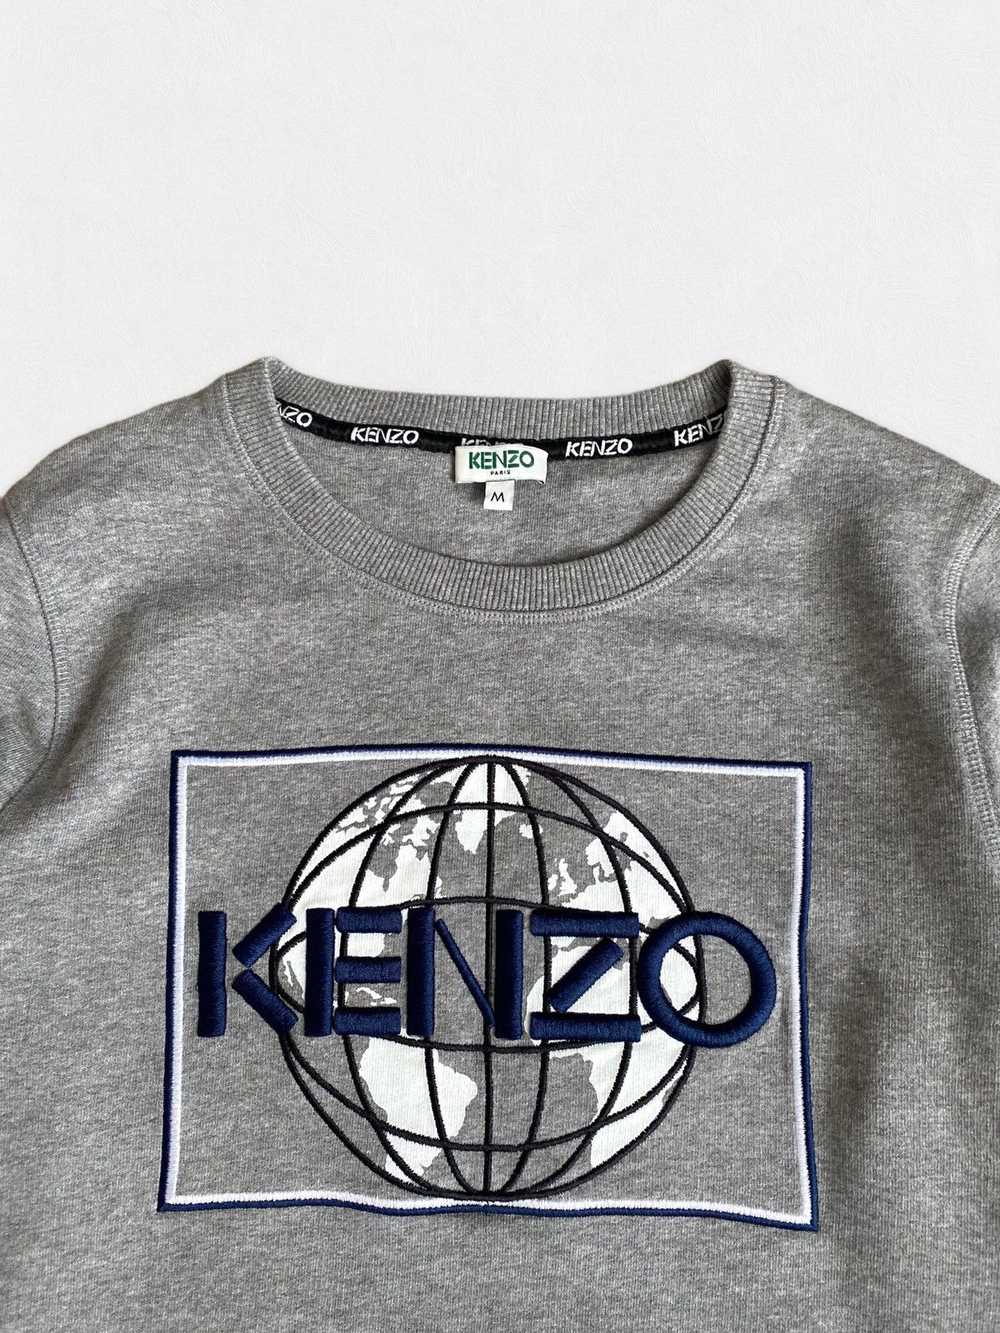 Kenzo × Luxury Kenzo W’s Earth Logo crew Sweatshi… - image 3